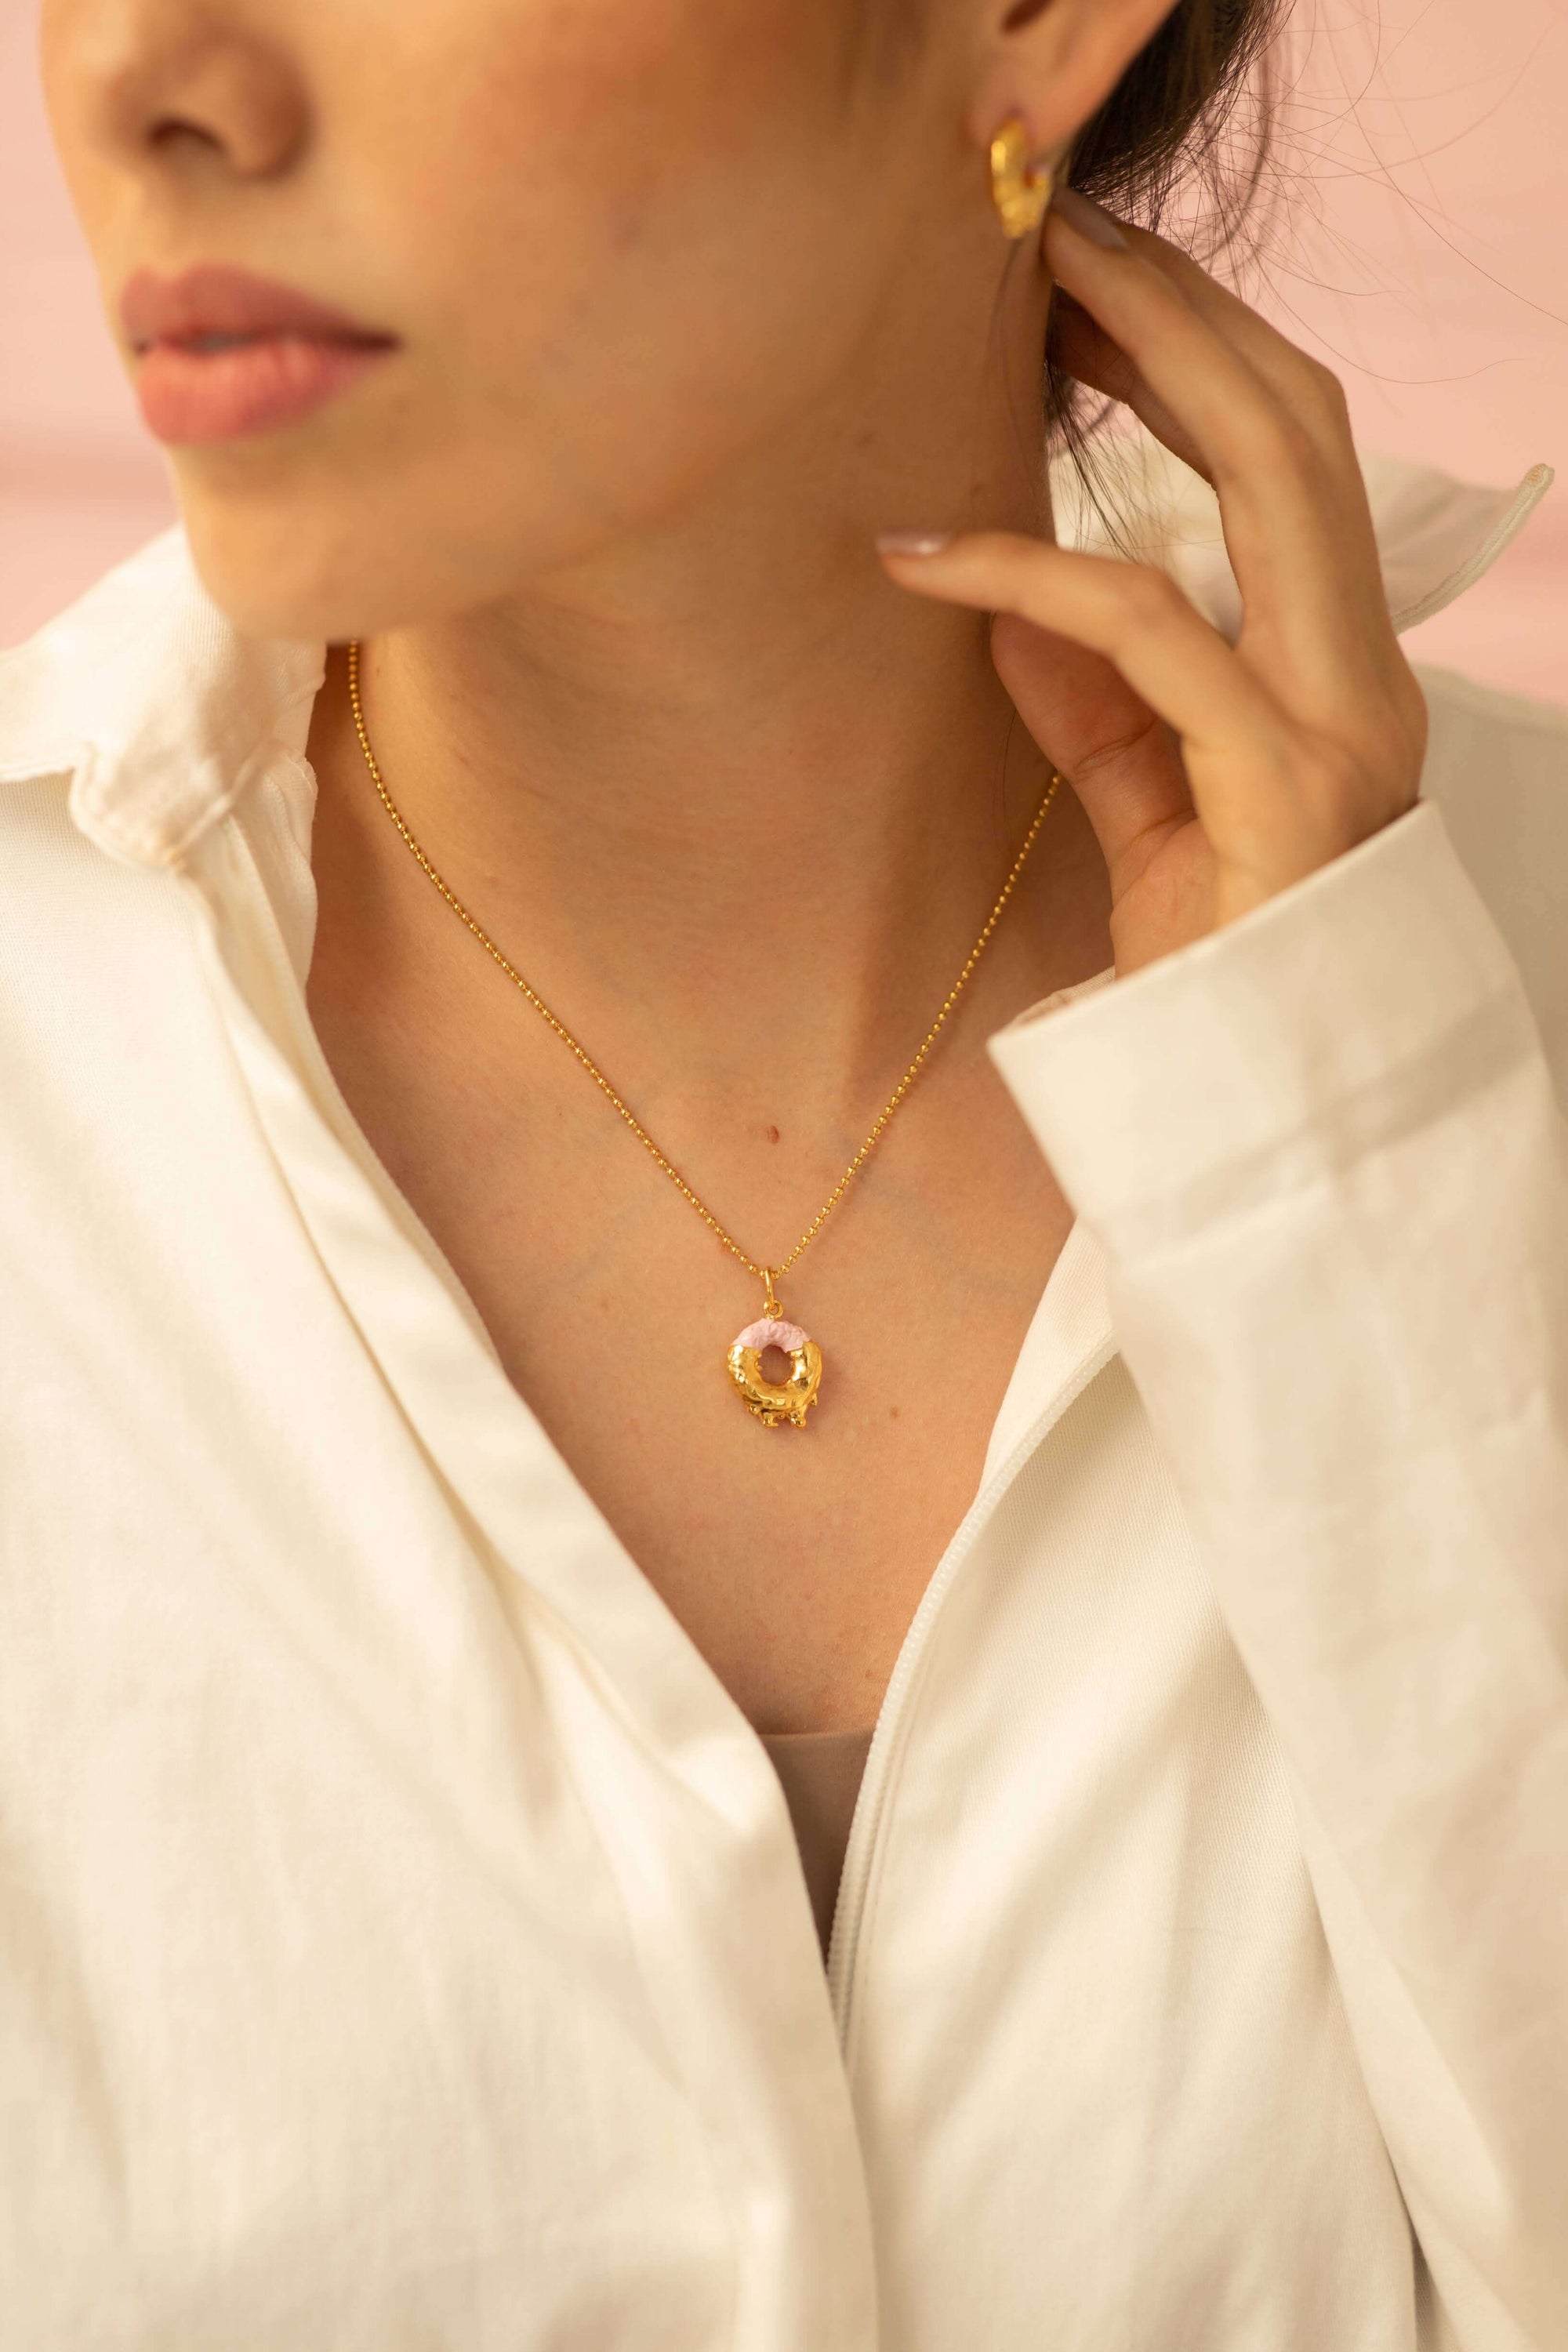 Pink FROOT HOOP necklace - Golden Treats